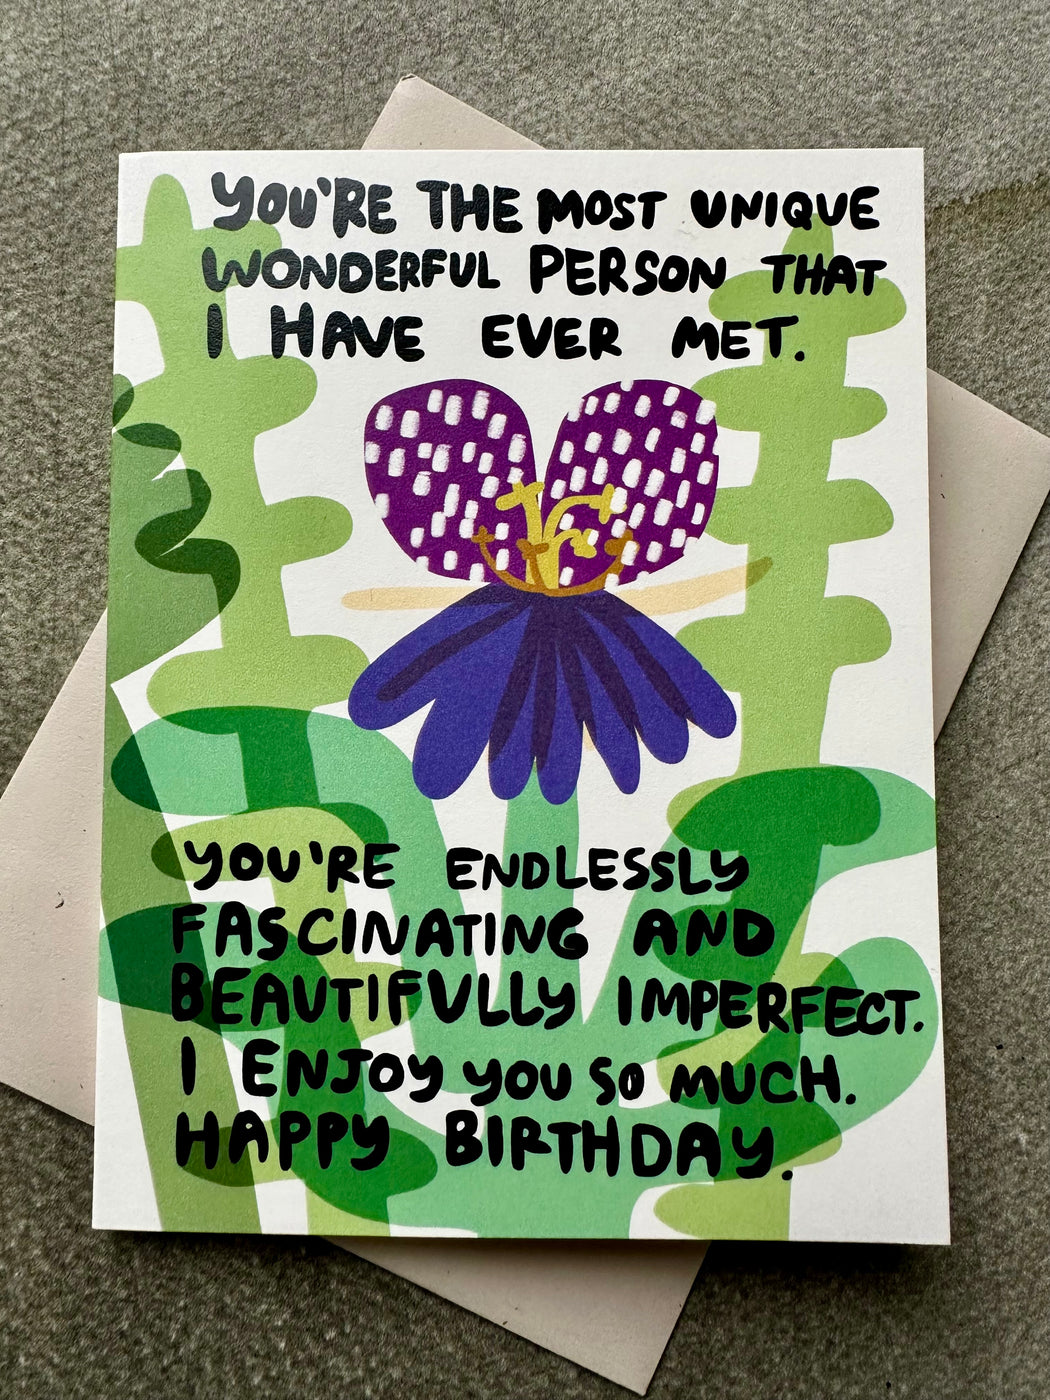 "I Enjoy You So Much" Birthday Card